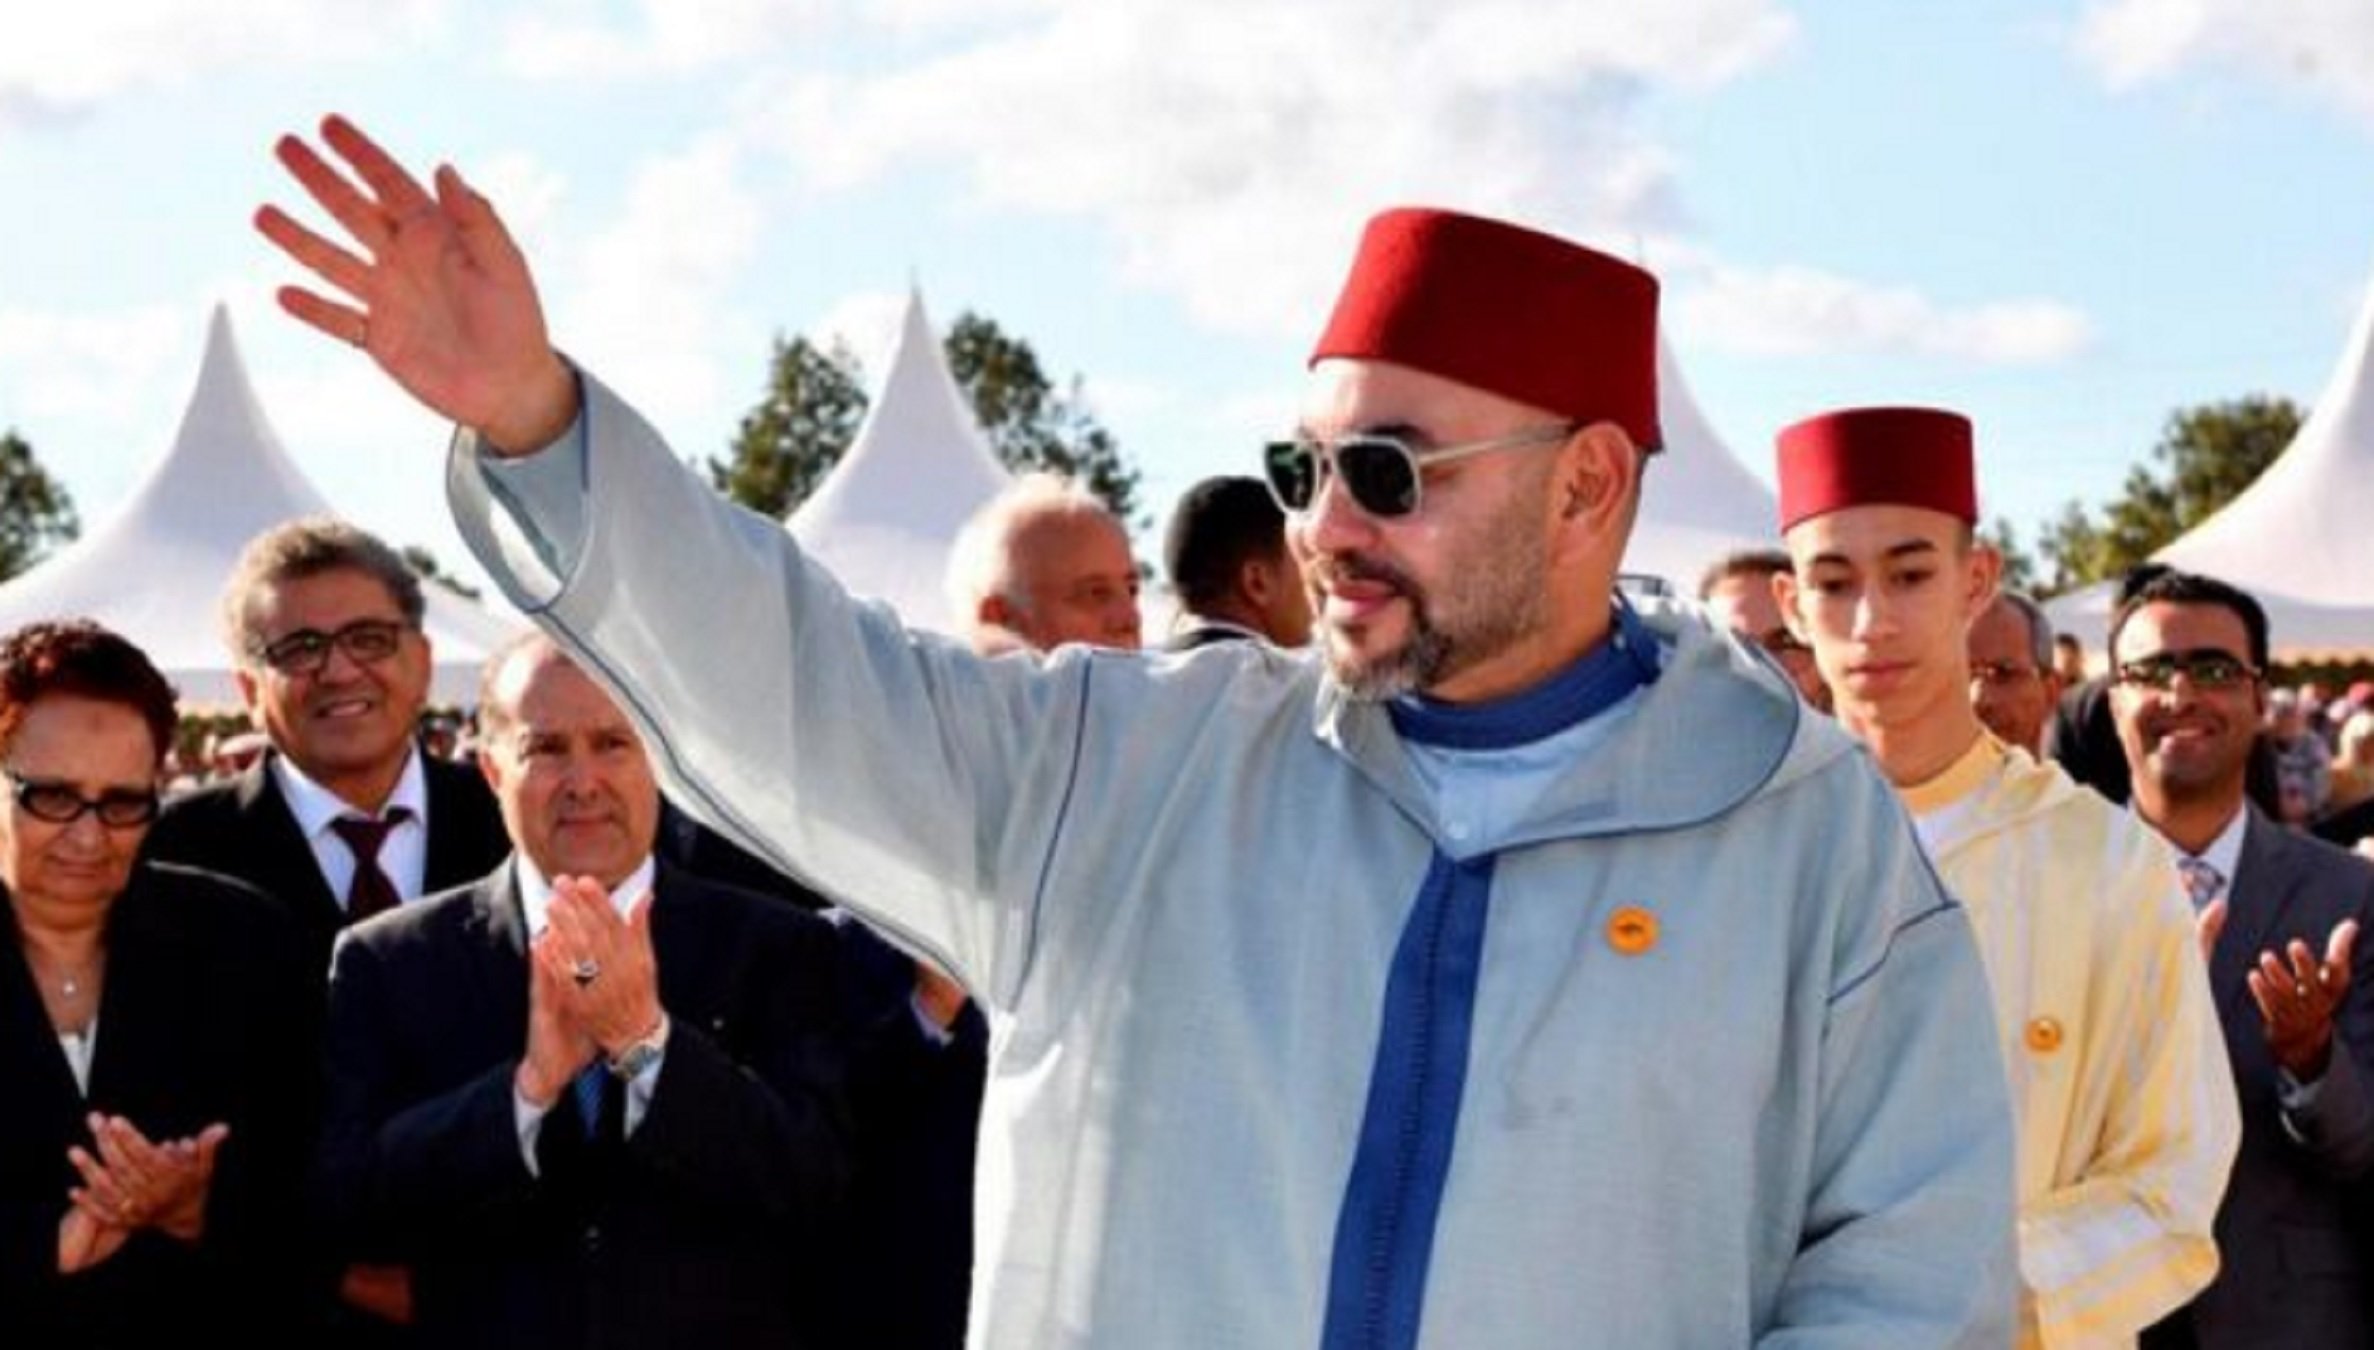 El rei Mohamed VI se suma a les celebracions del Mundial als carrers de Rabat | VÍDEO